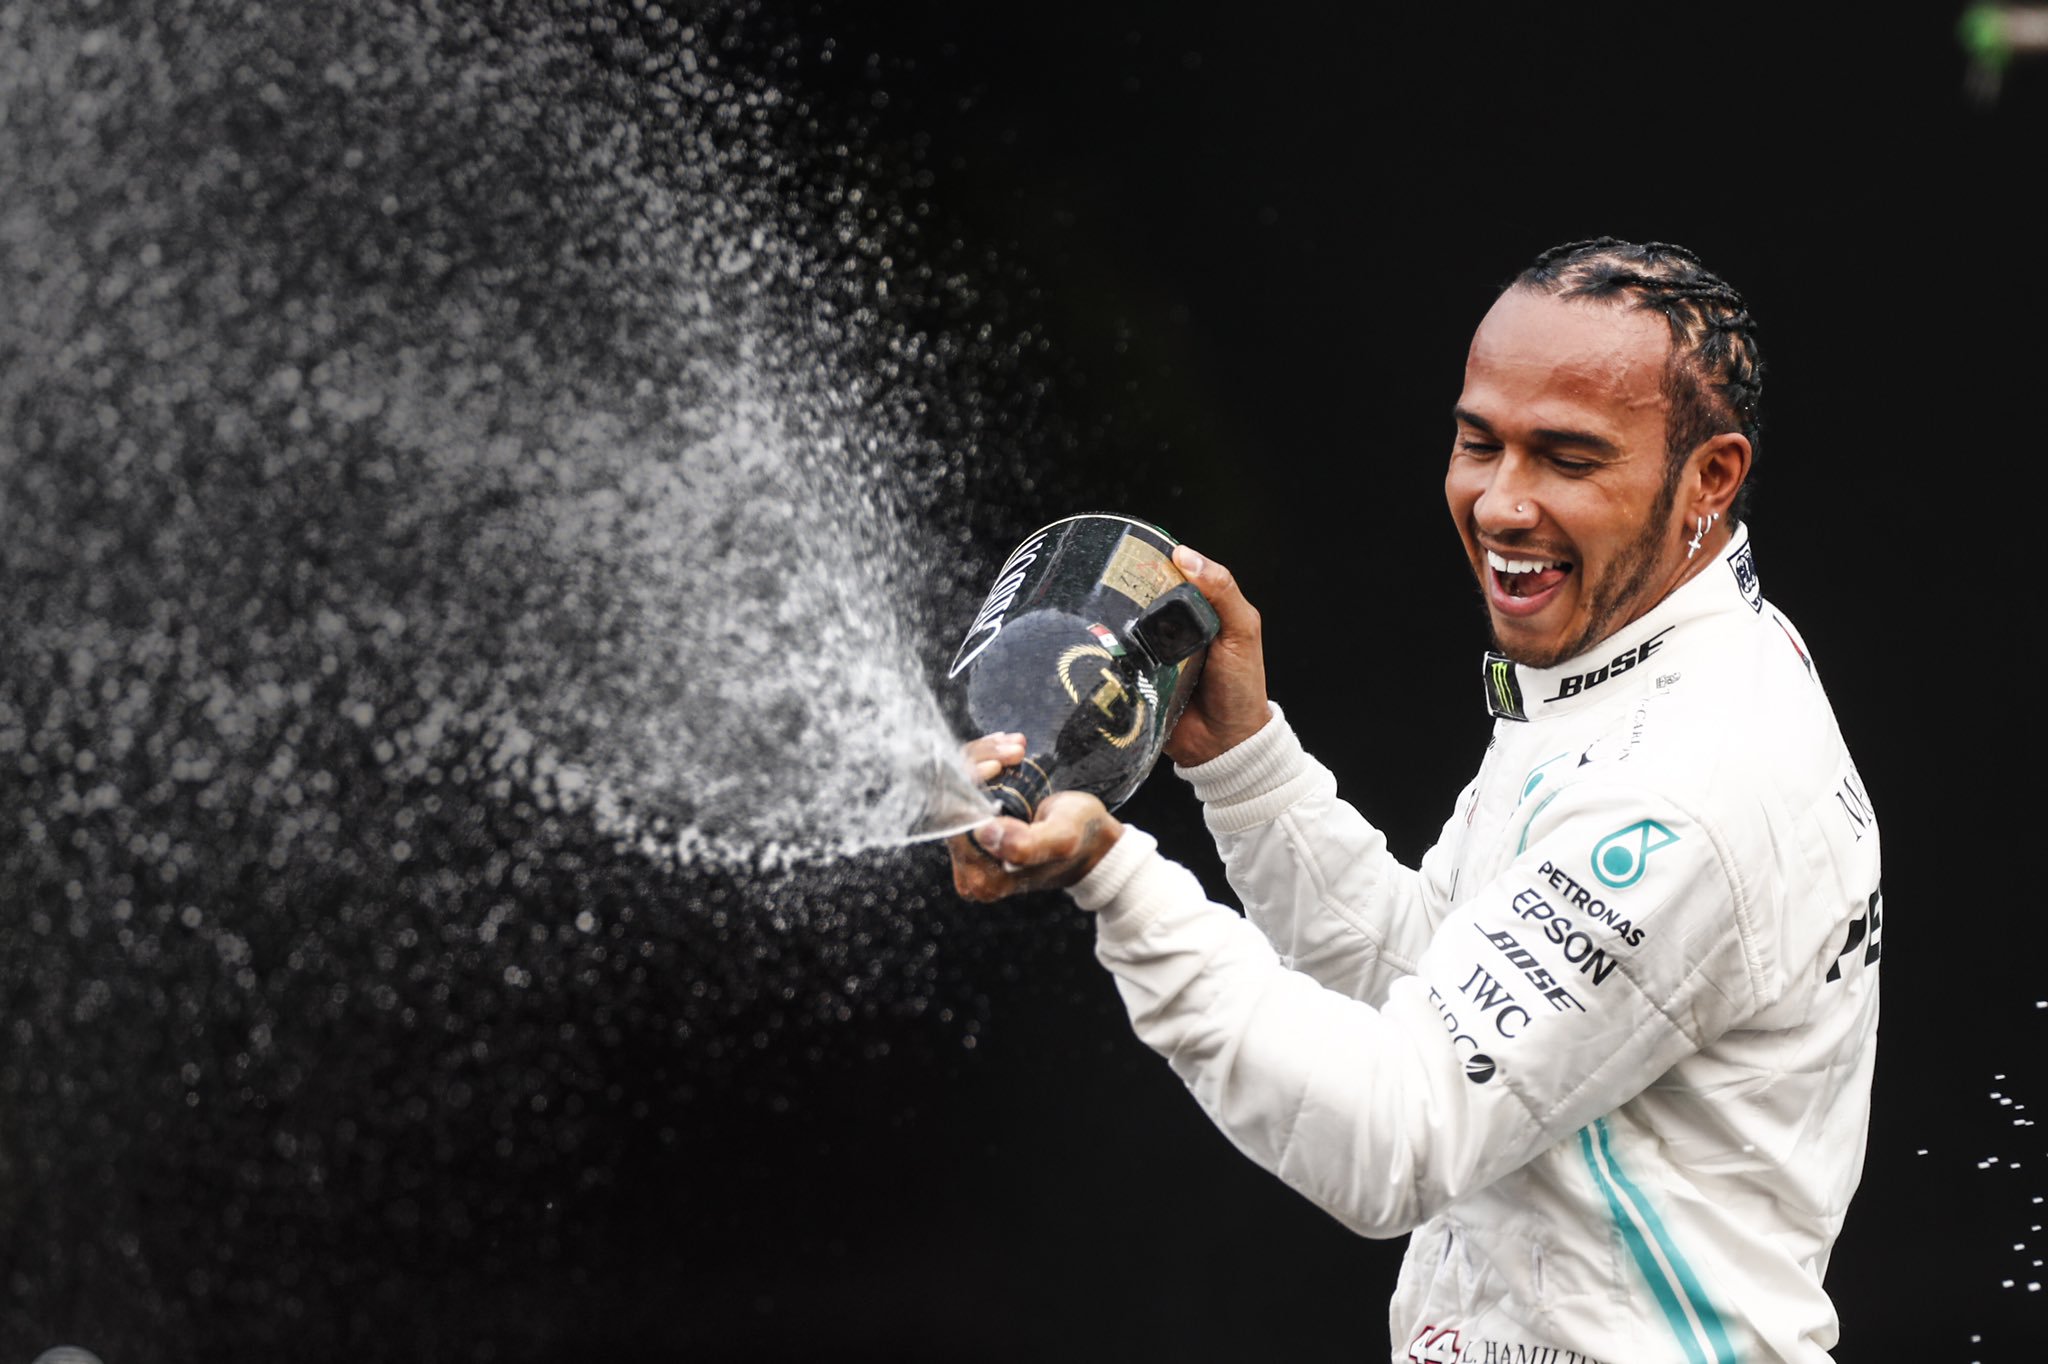 Lewis Hamilton hanya butuh tambahan sedikit poin untuk memastikan gelar juara dunia keenamnya di genggaman. (Foto: Twitter/@MercedesAMGF1)